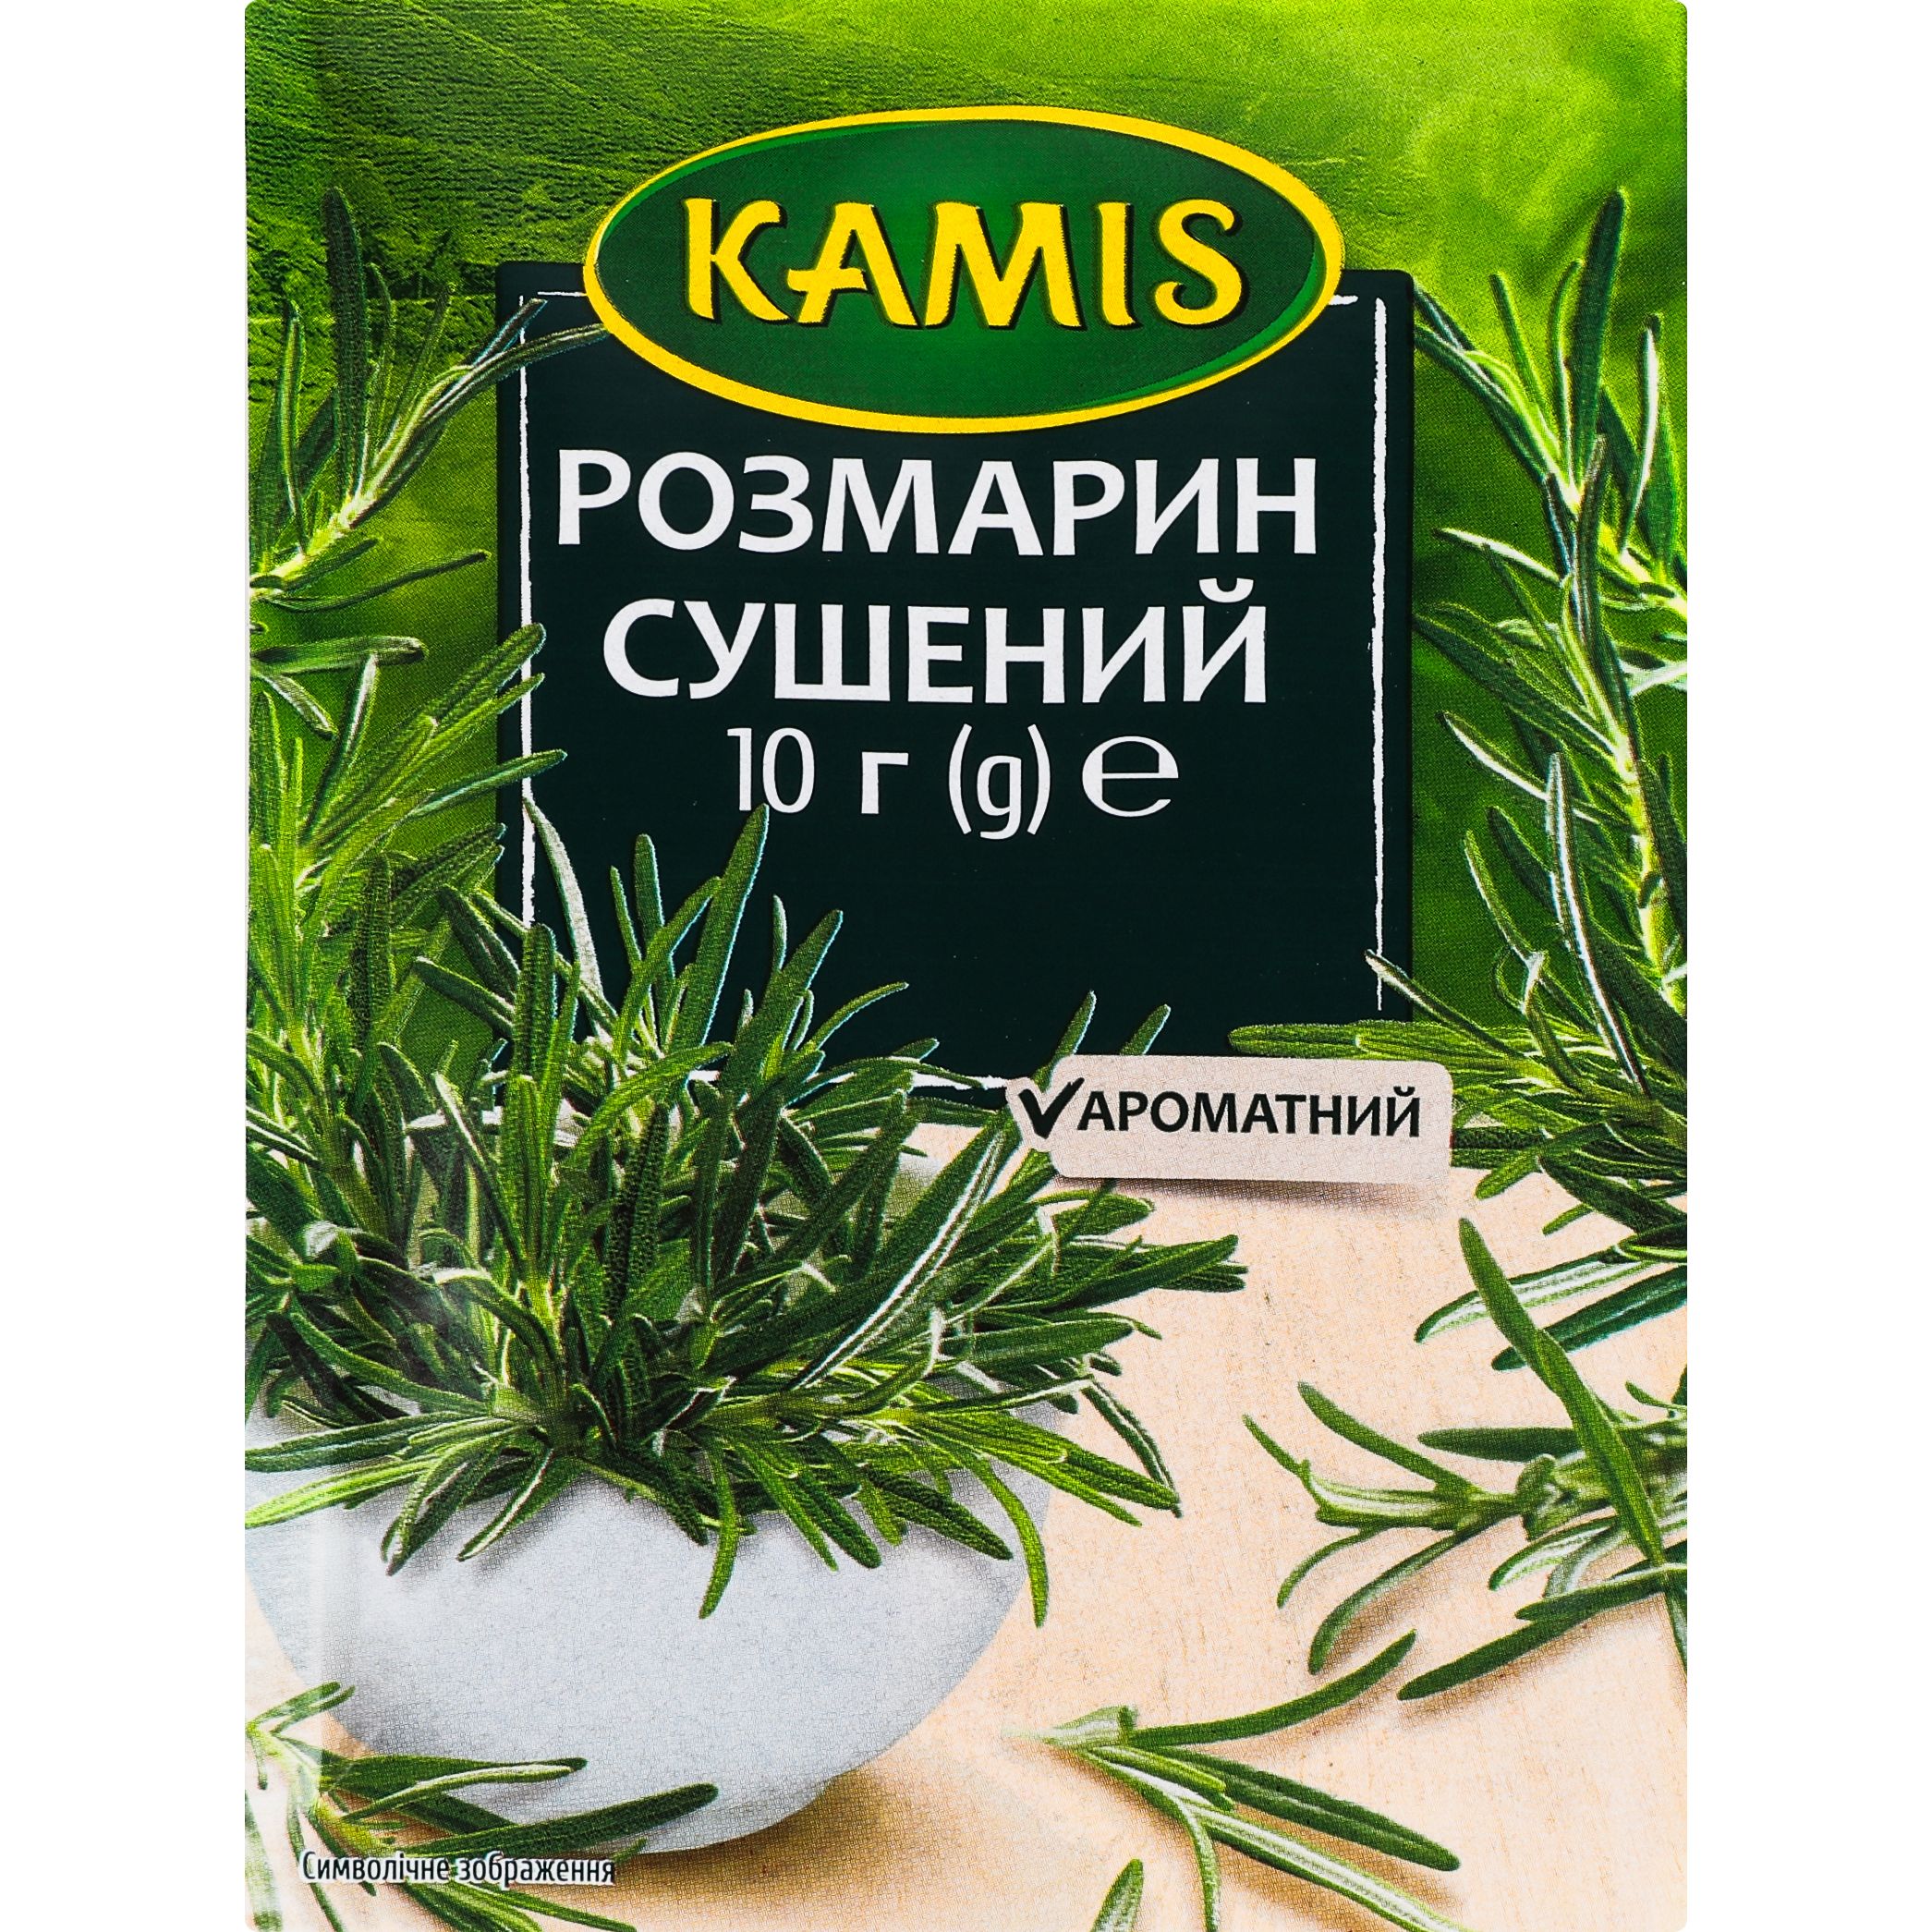 Розмарин Kamis, 10 г (746959) - фото 1